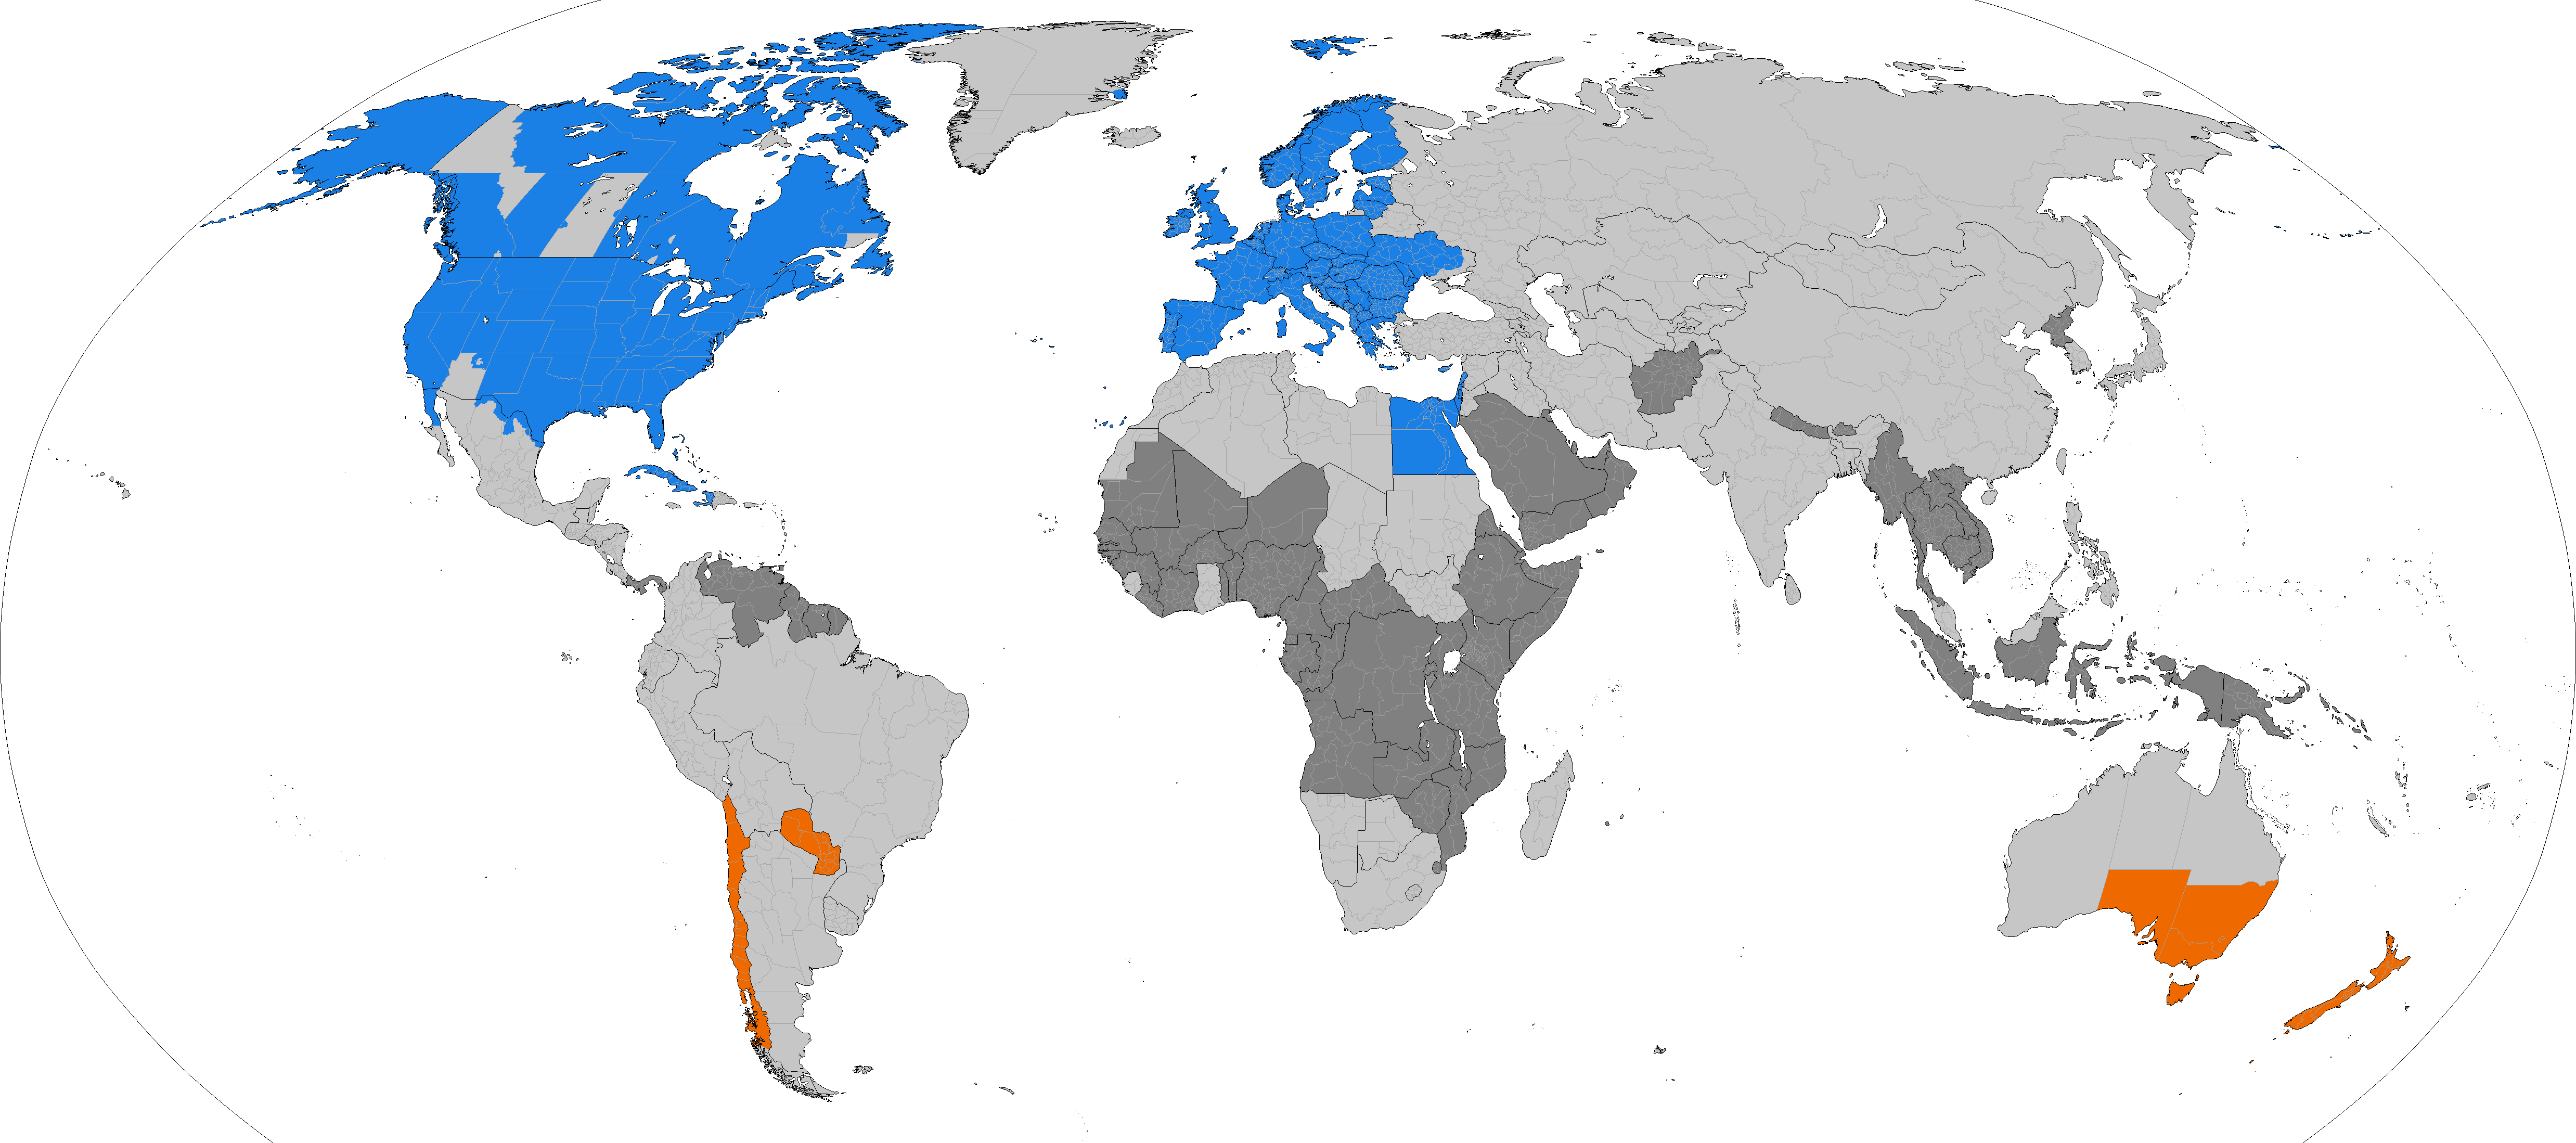 Karta svijeta koja prikazuje države koje prakticiraju ljetno vrijeme. Plavom i narančastom bojom označene su države koje ga još uvijek prakticiraju, svjetlo sivom one koje su ga prakticirale i prestale, dok su tamno sivom označene države koje ga nikad nisu ni prakticirale. Izvor: TimeZonesBoy.